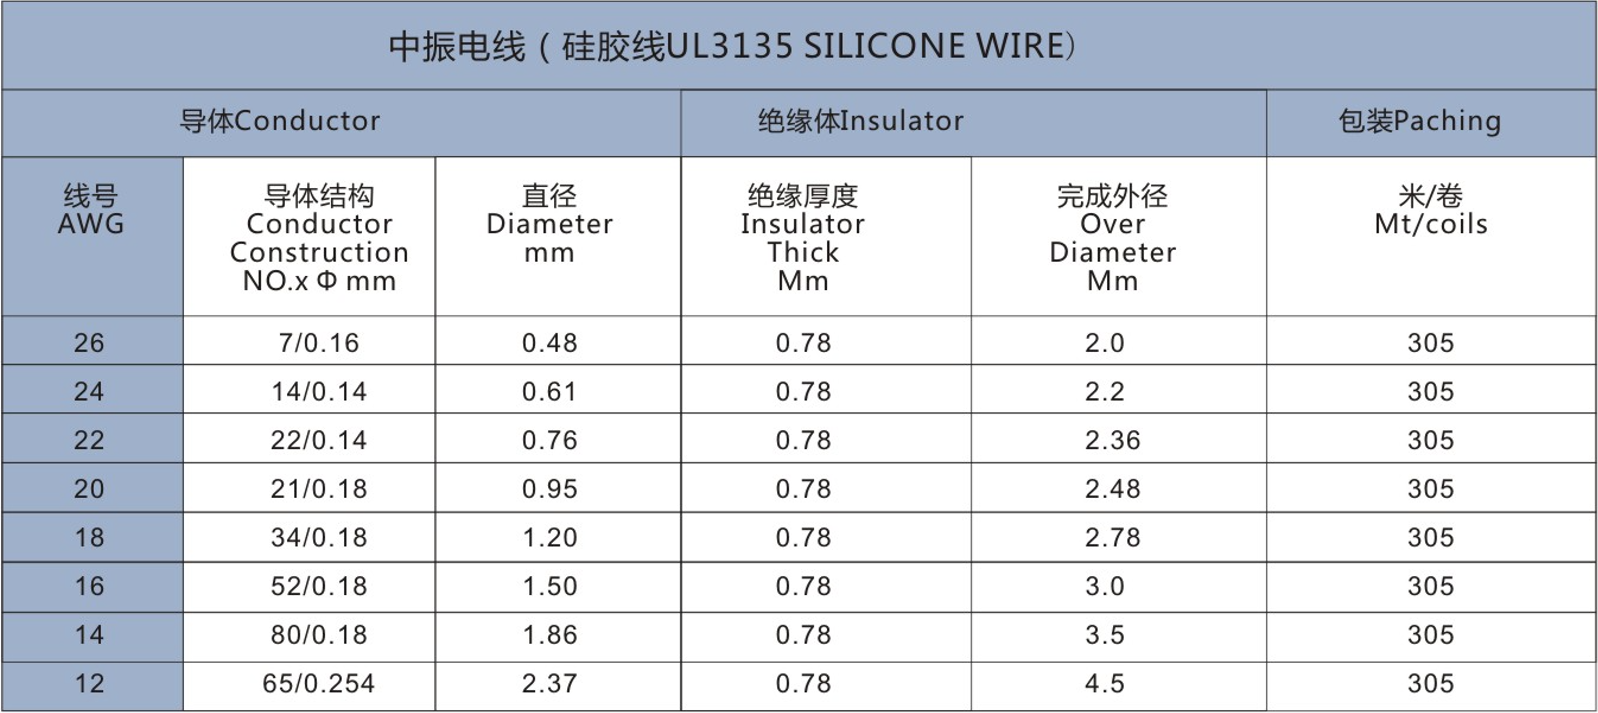 UL3135 Silicone Wire